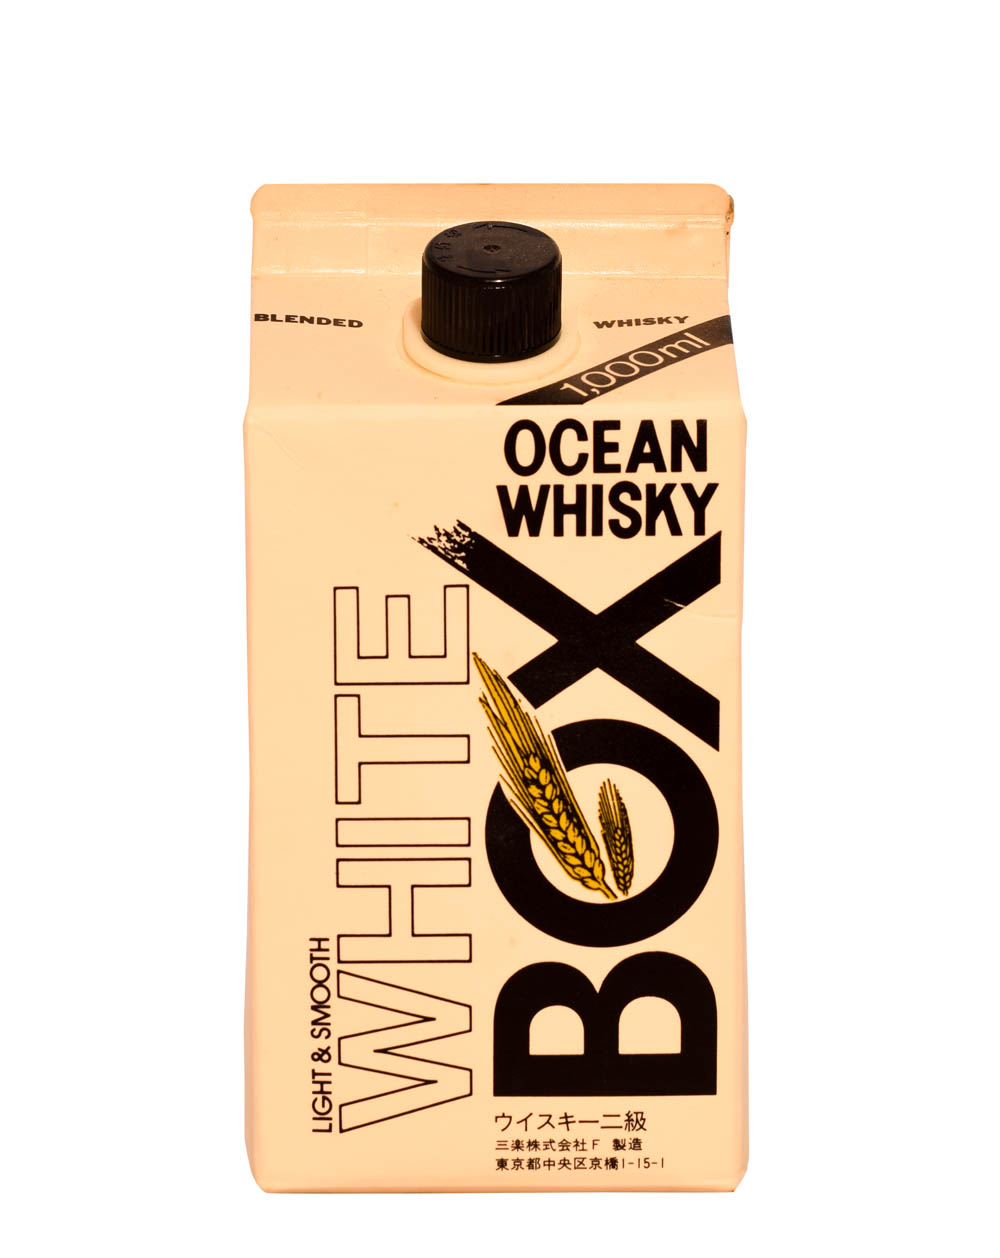 Ocean Whisky Sanraku White Box 1000ml Musthave Malts MHM